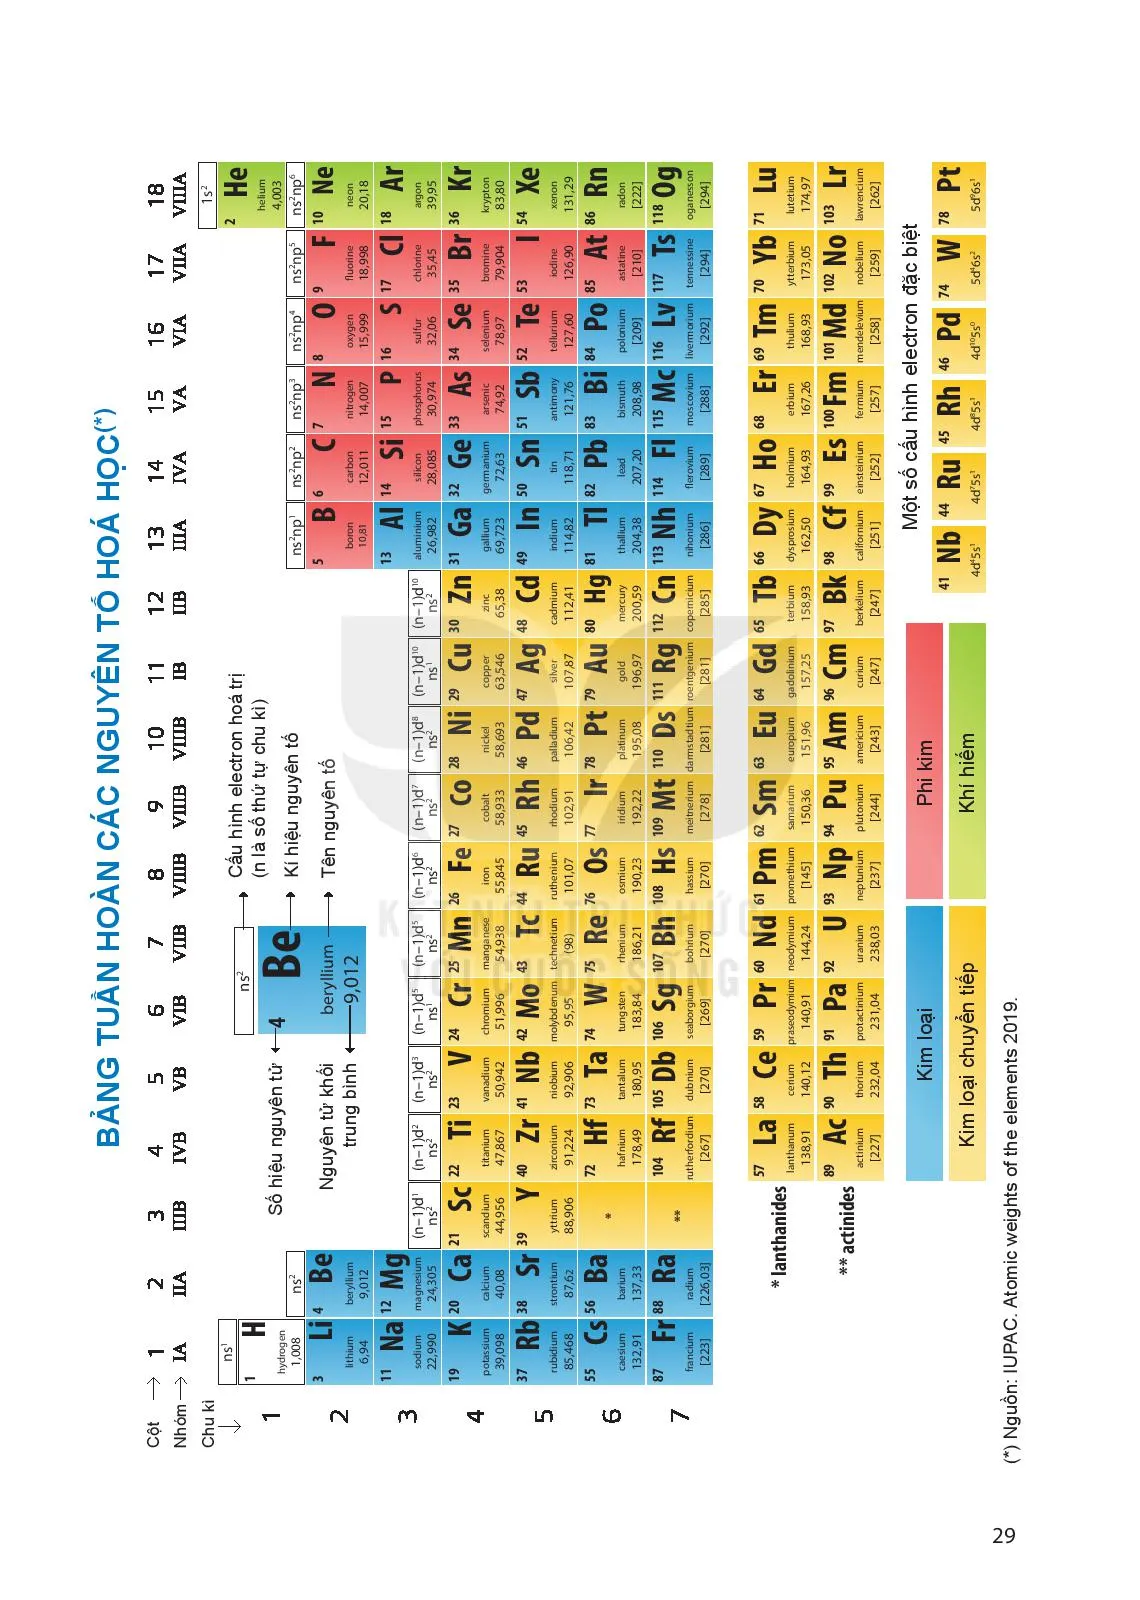 Chương 2. Bảng tuần hoàn các nguyên tố hoá học và định luật tuần hoàn